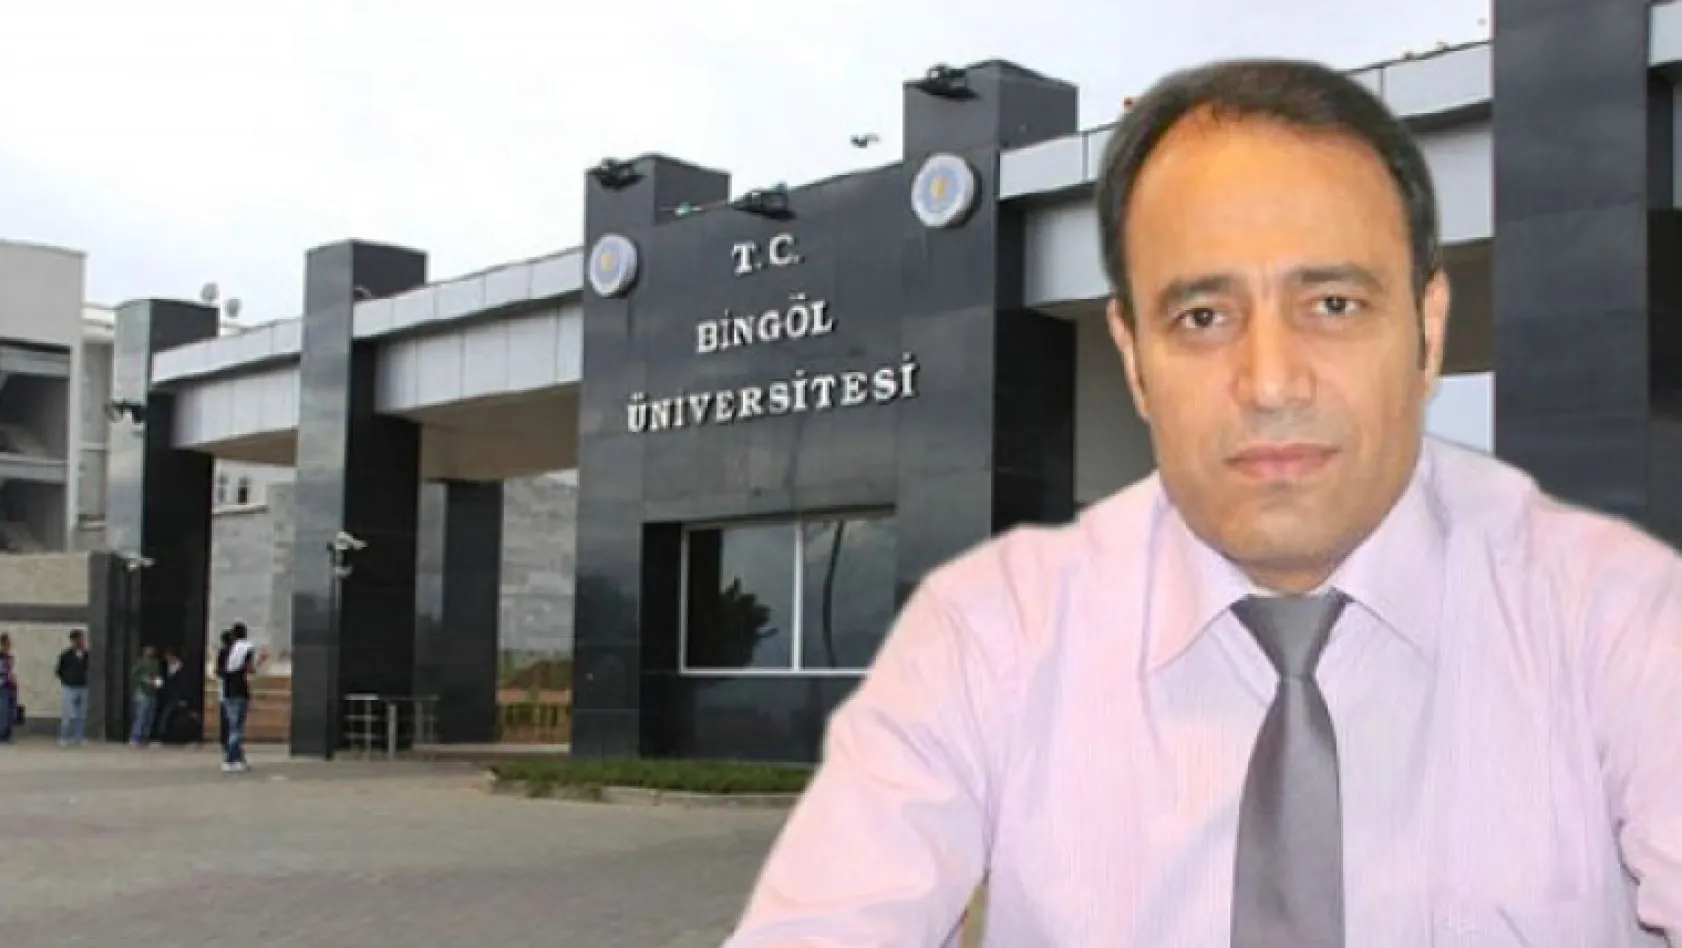 Komşu İl Bingöl Üniversitesi'ne yeni rektör